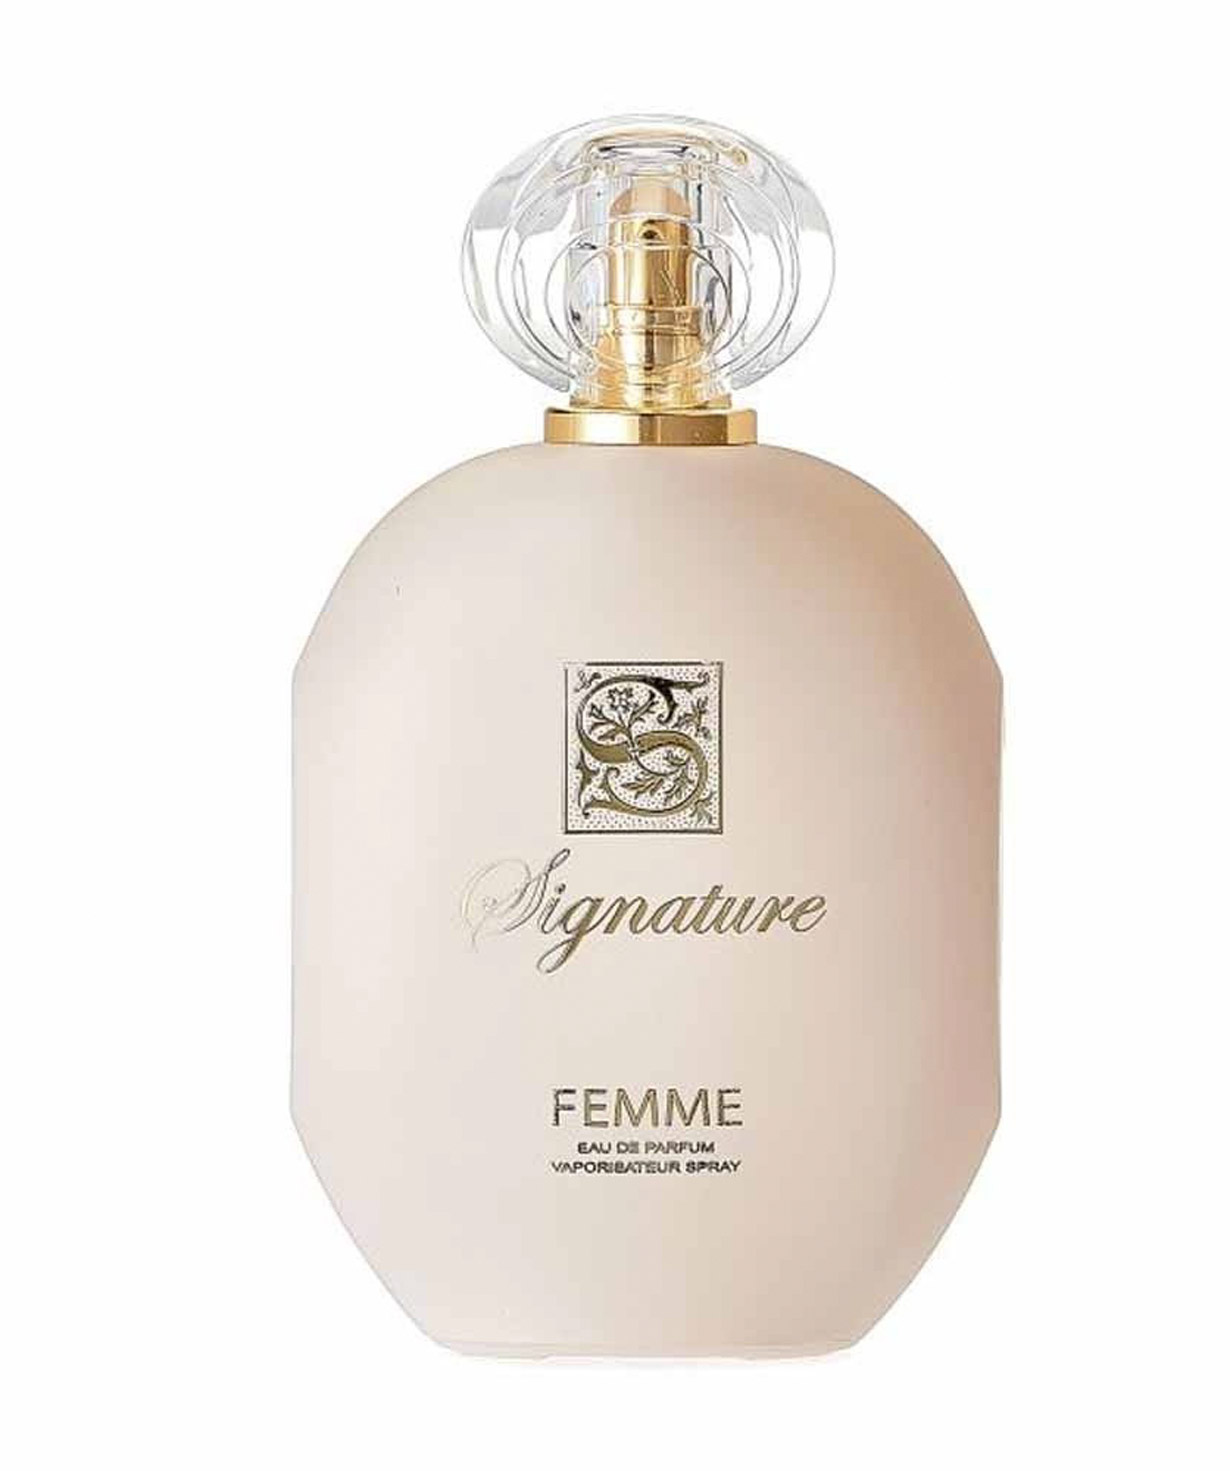 Օծանելիք «Signature Femme» Eau De Parfum կանացի